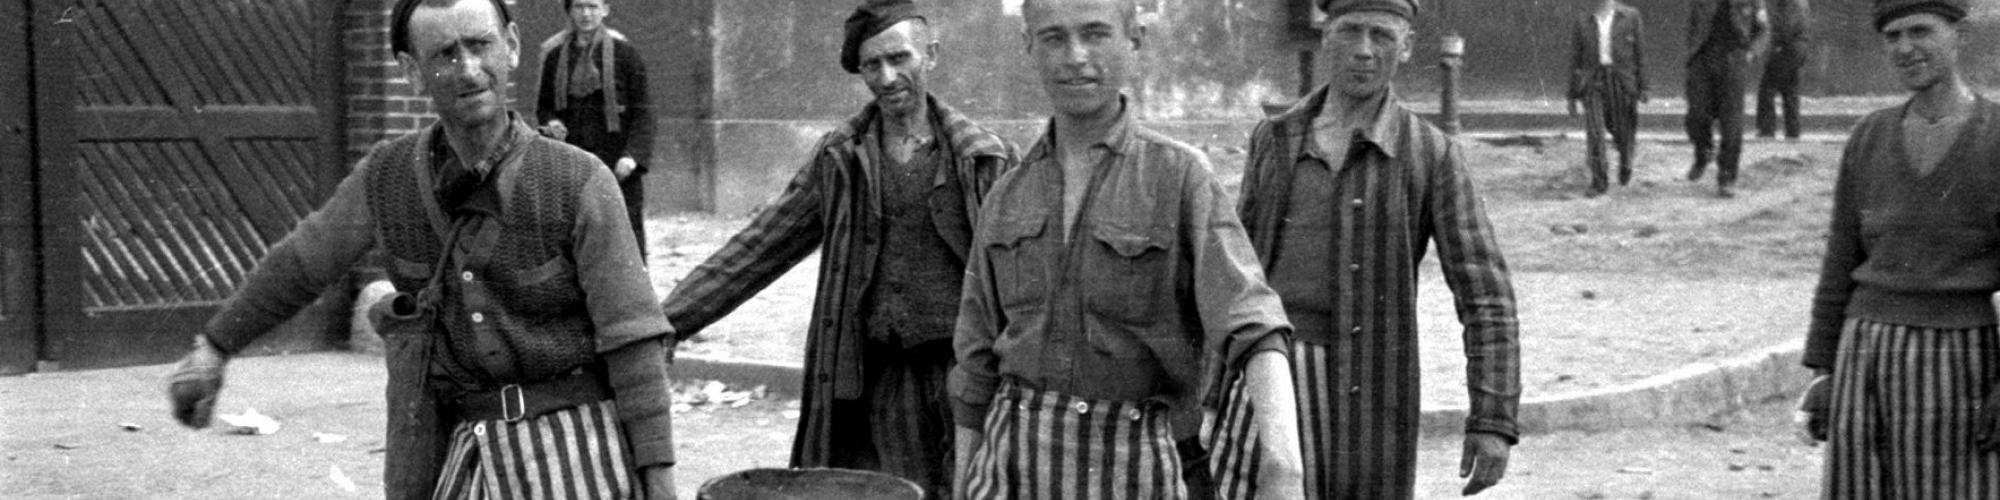 Photo Raphaël Algoet, Buchenwald avril 1945 © CegeSoma/Archives de l’Etat